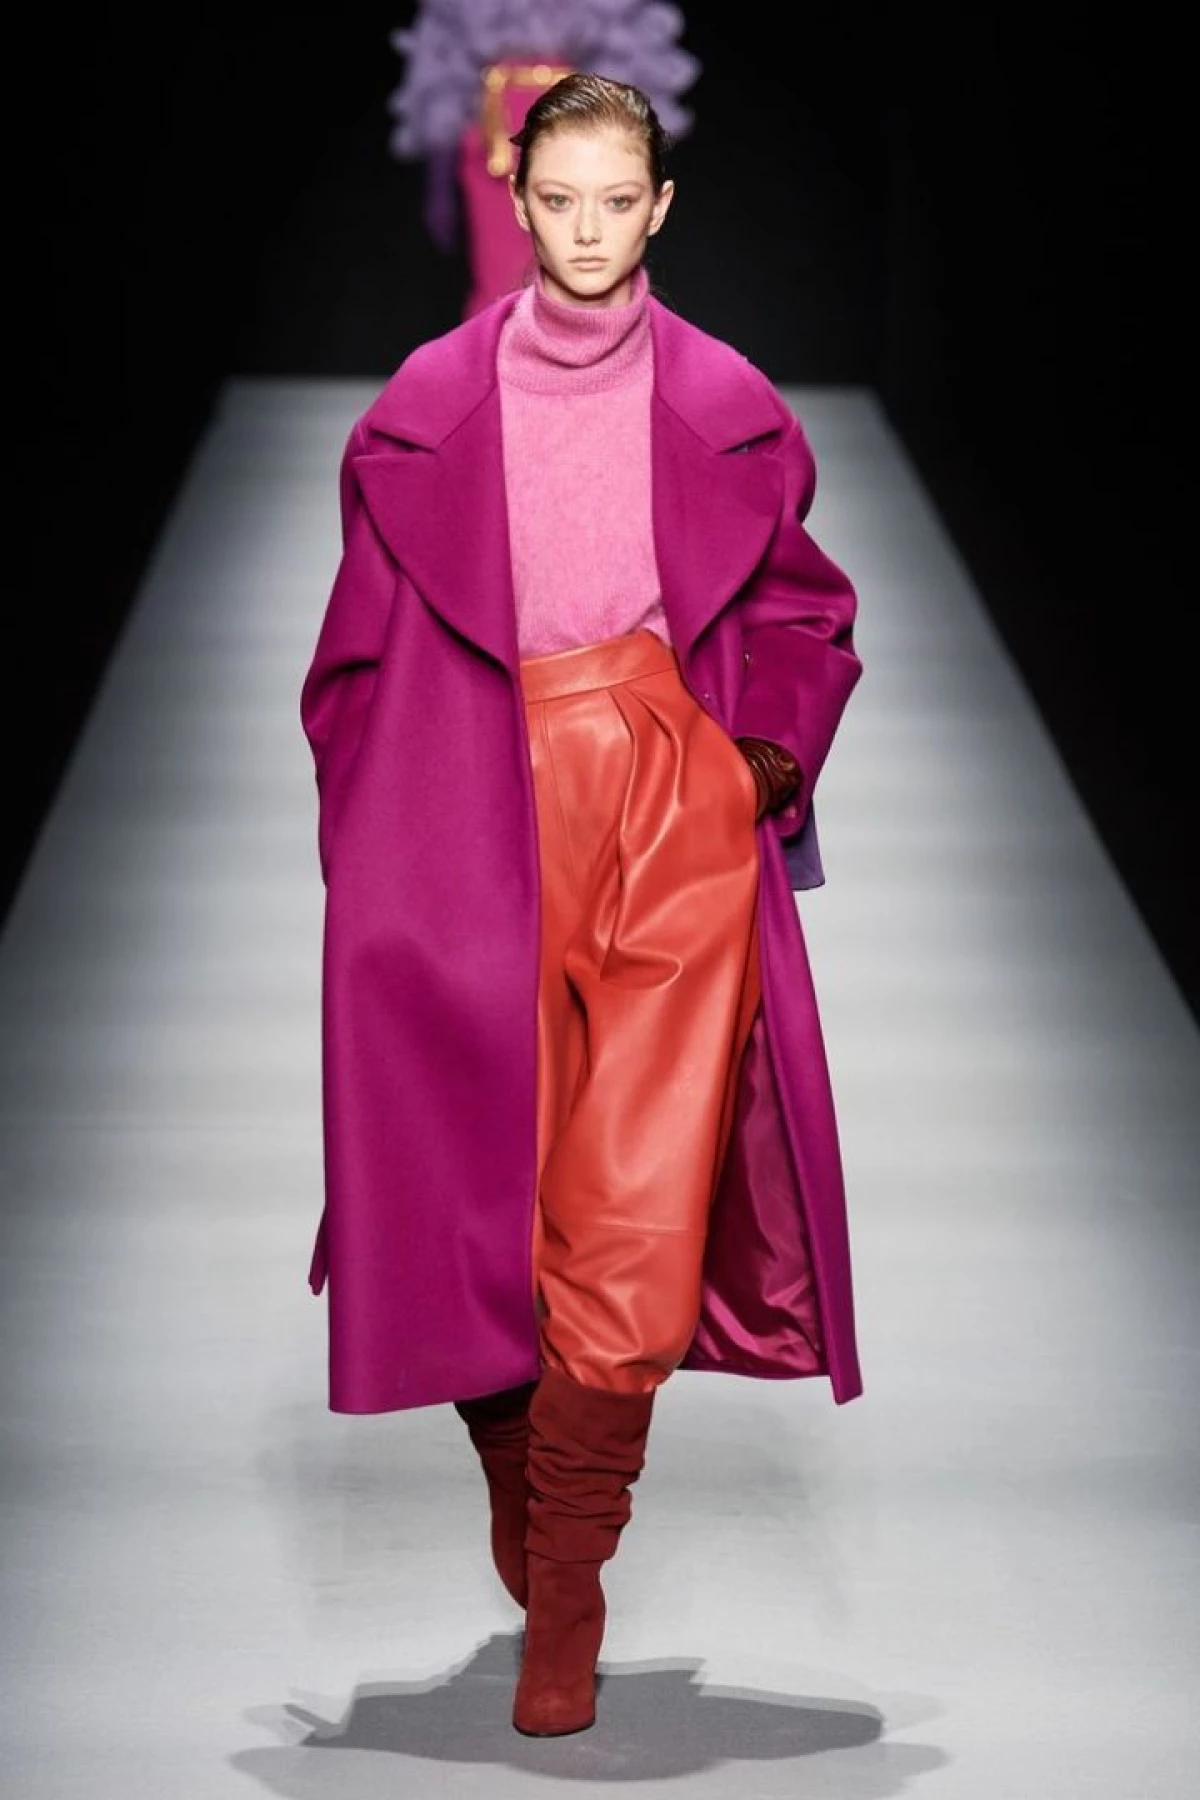 Raspberry-koloro - modaj kombinaĵoj kaj ideoj de elegantaj bildoj 16495_3